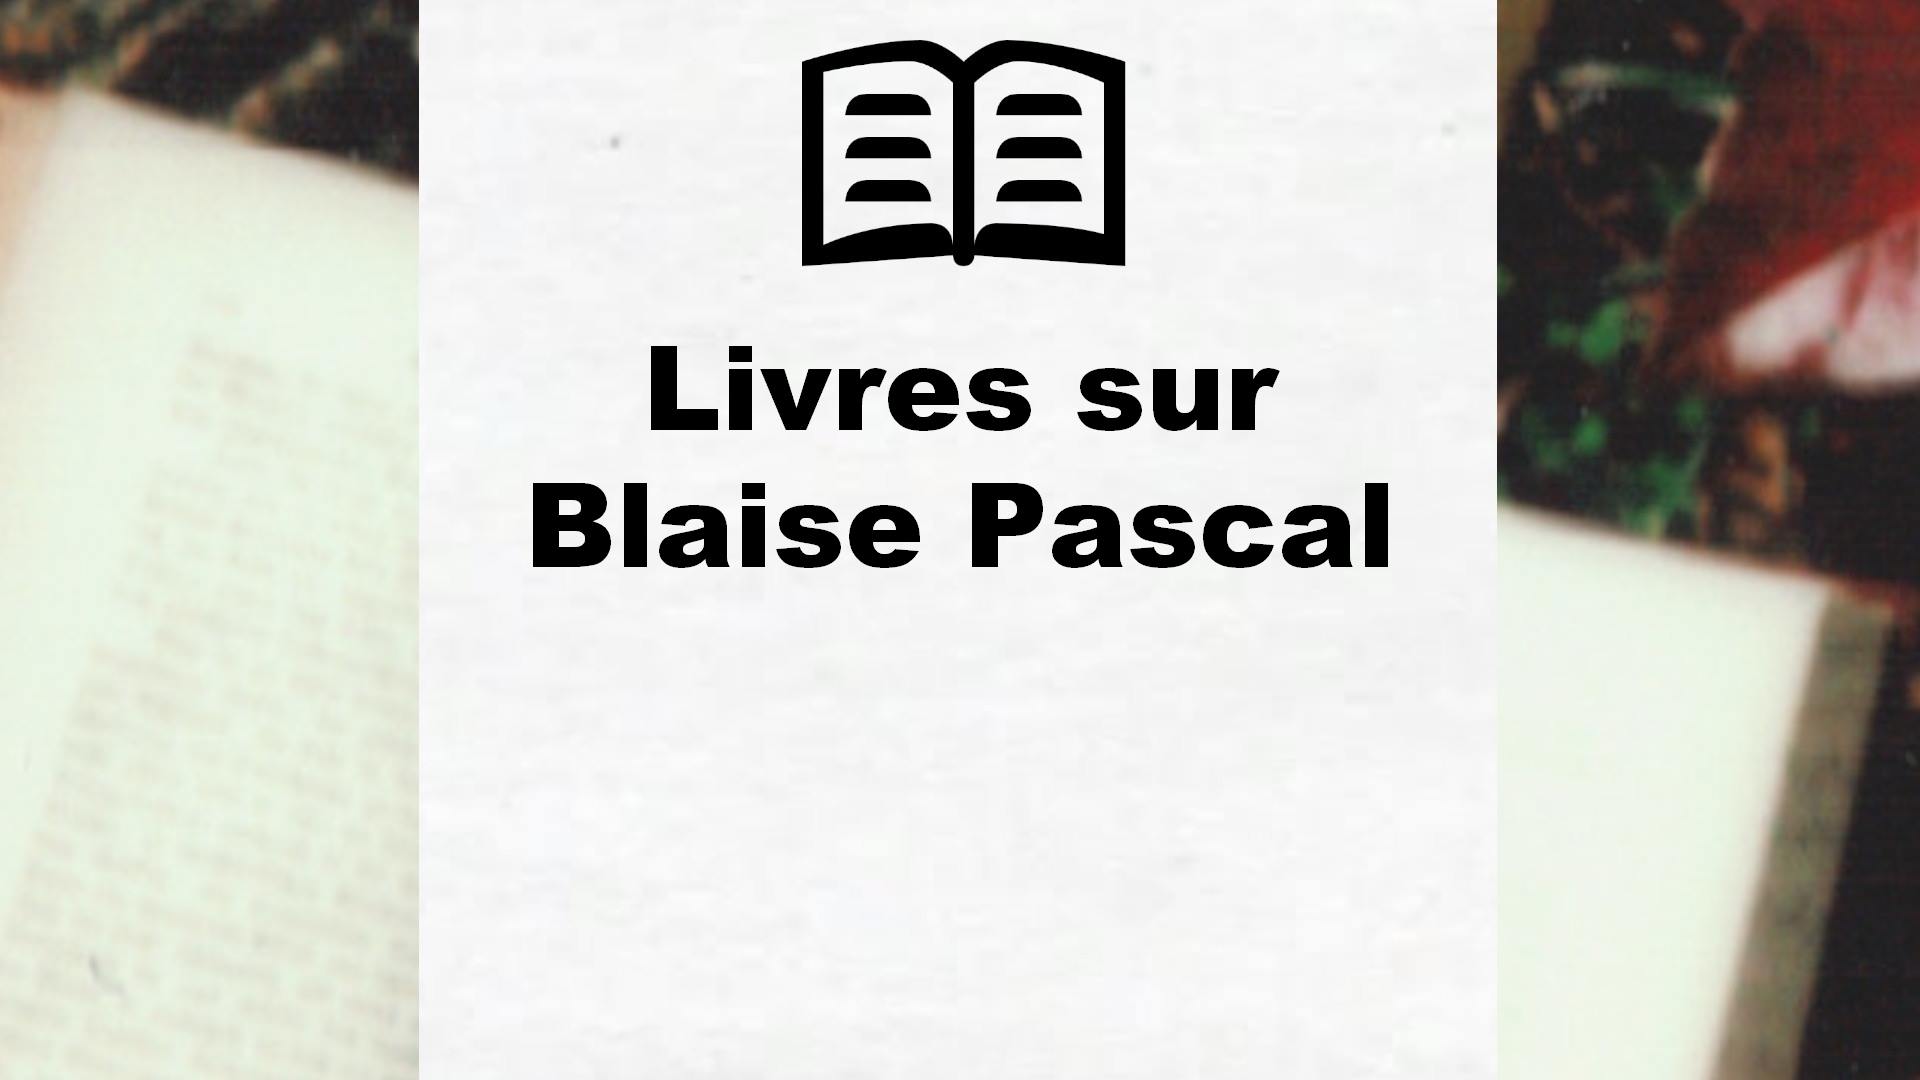 Livres sur Blaise Pascal